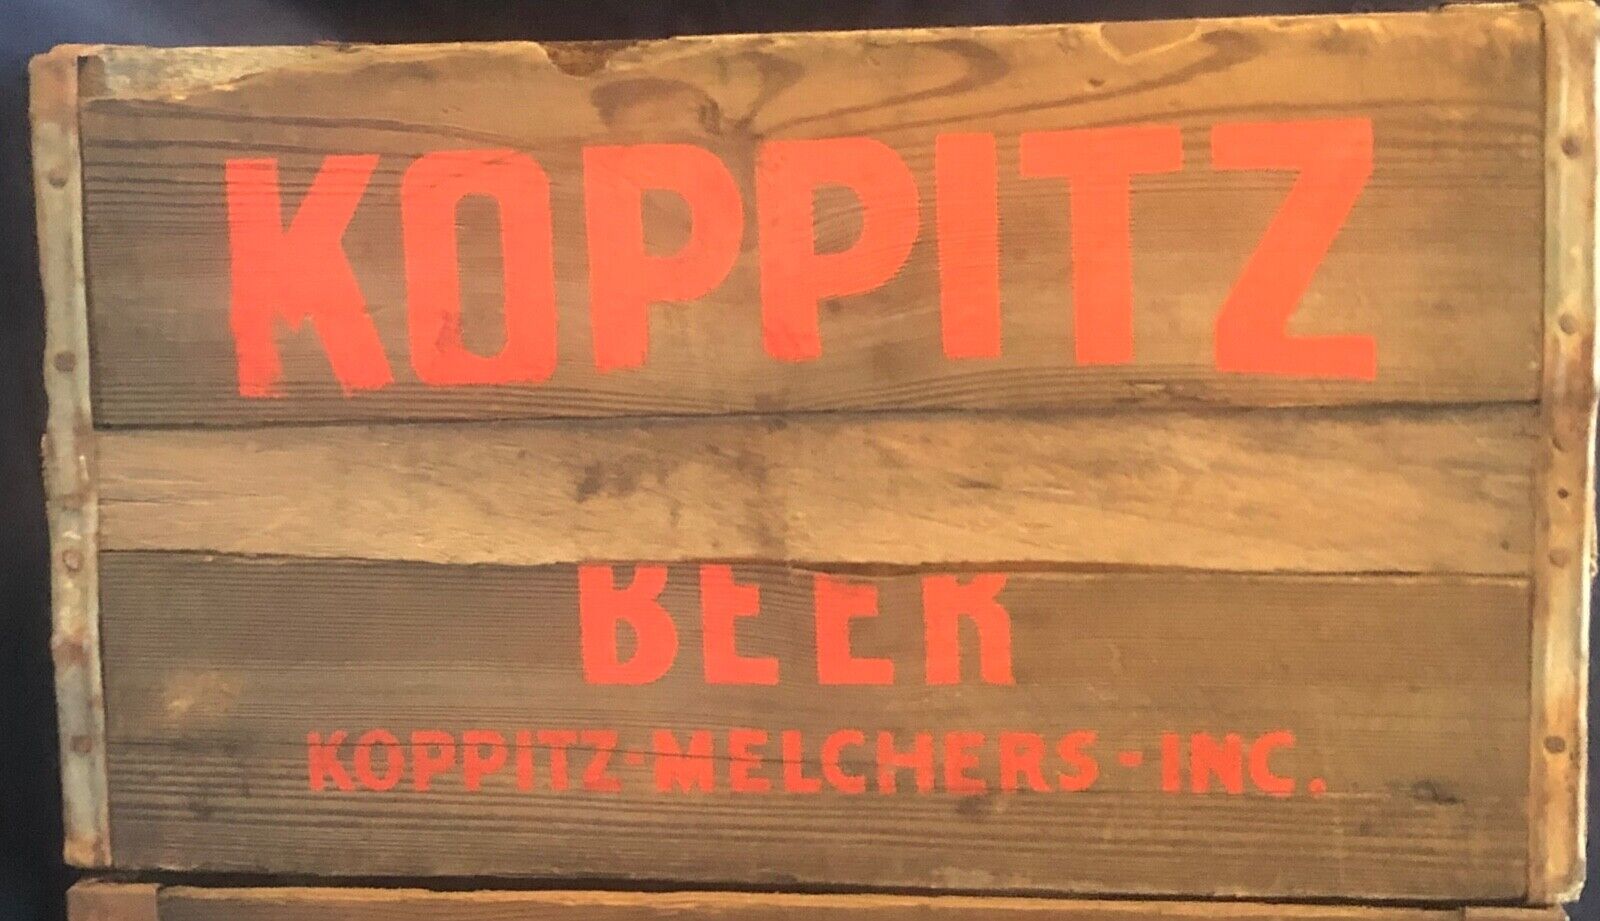 Vintage Antique Wooden Koppitz Beer Crate (2006)